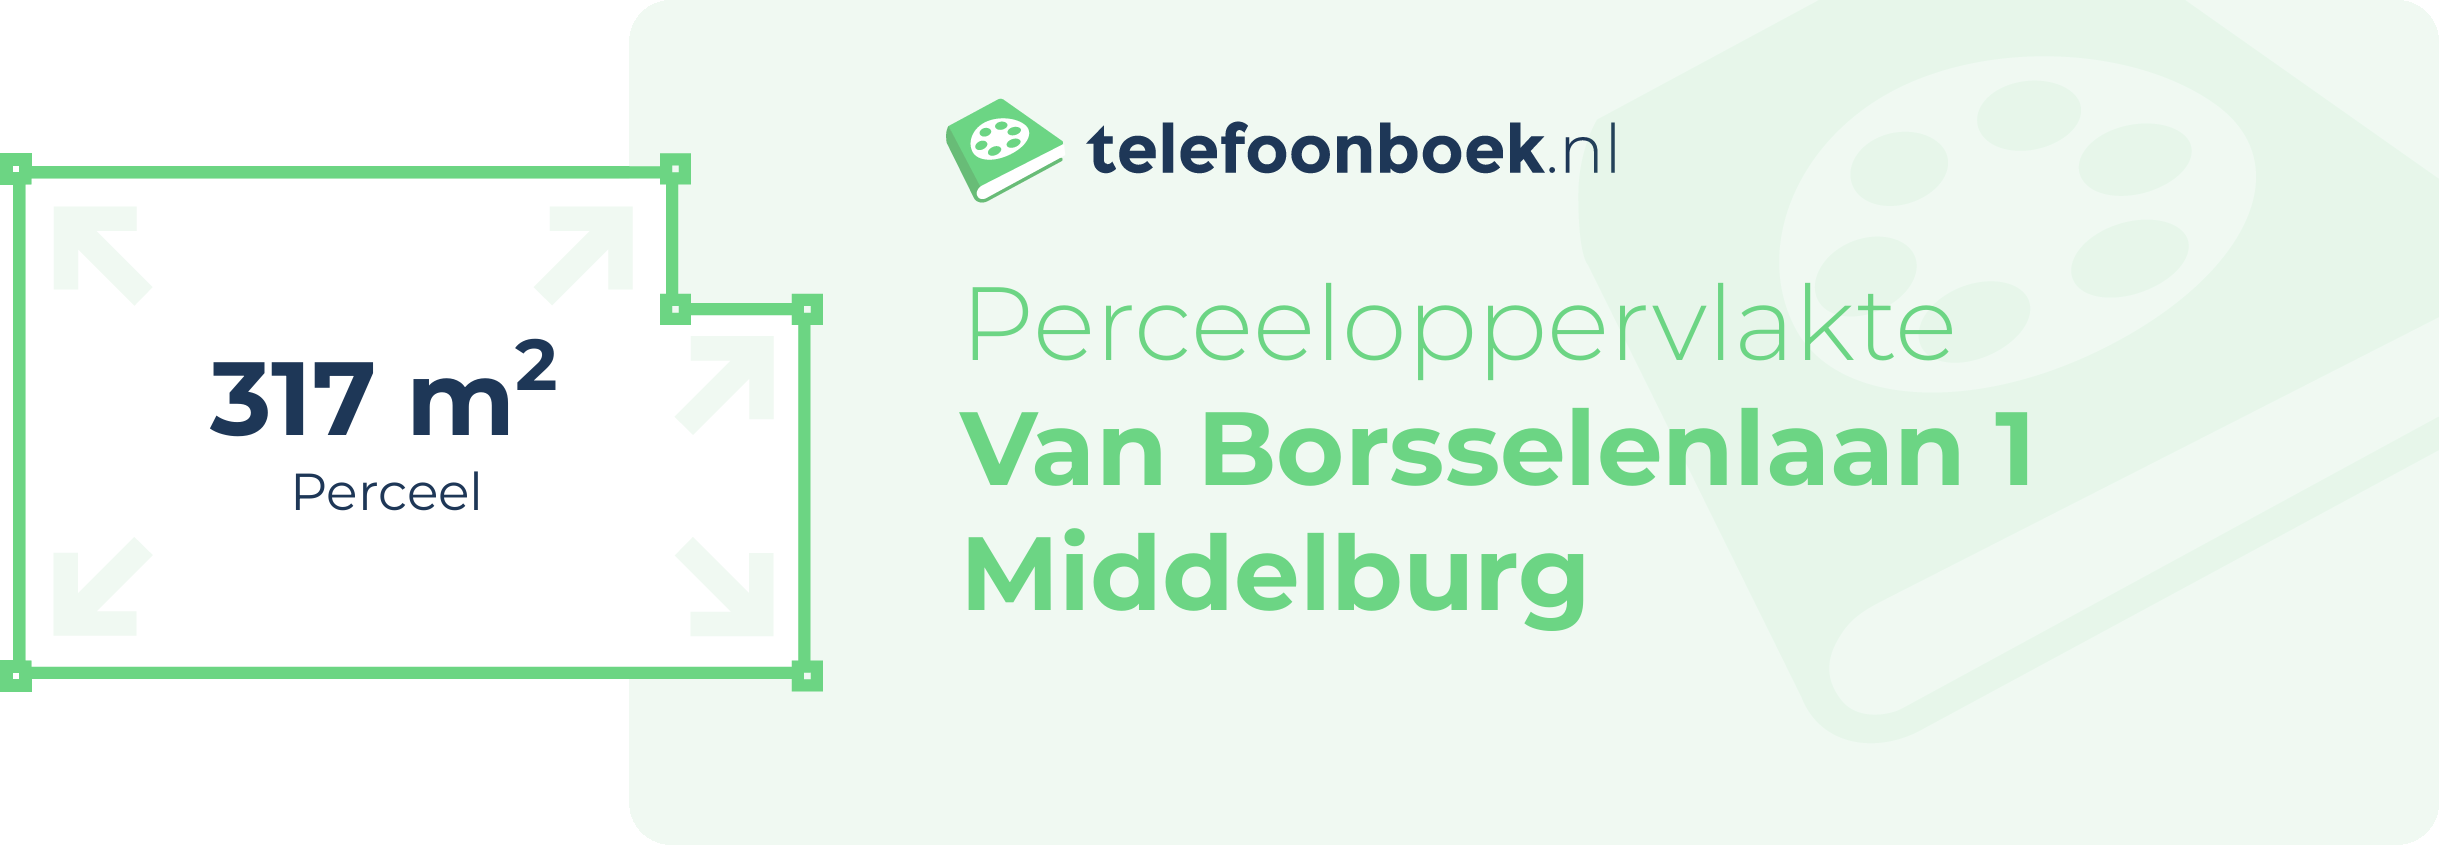 Perceeloppervlakte Van Borsselenlaan 1 Middelburg